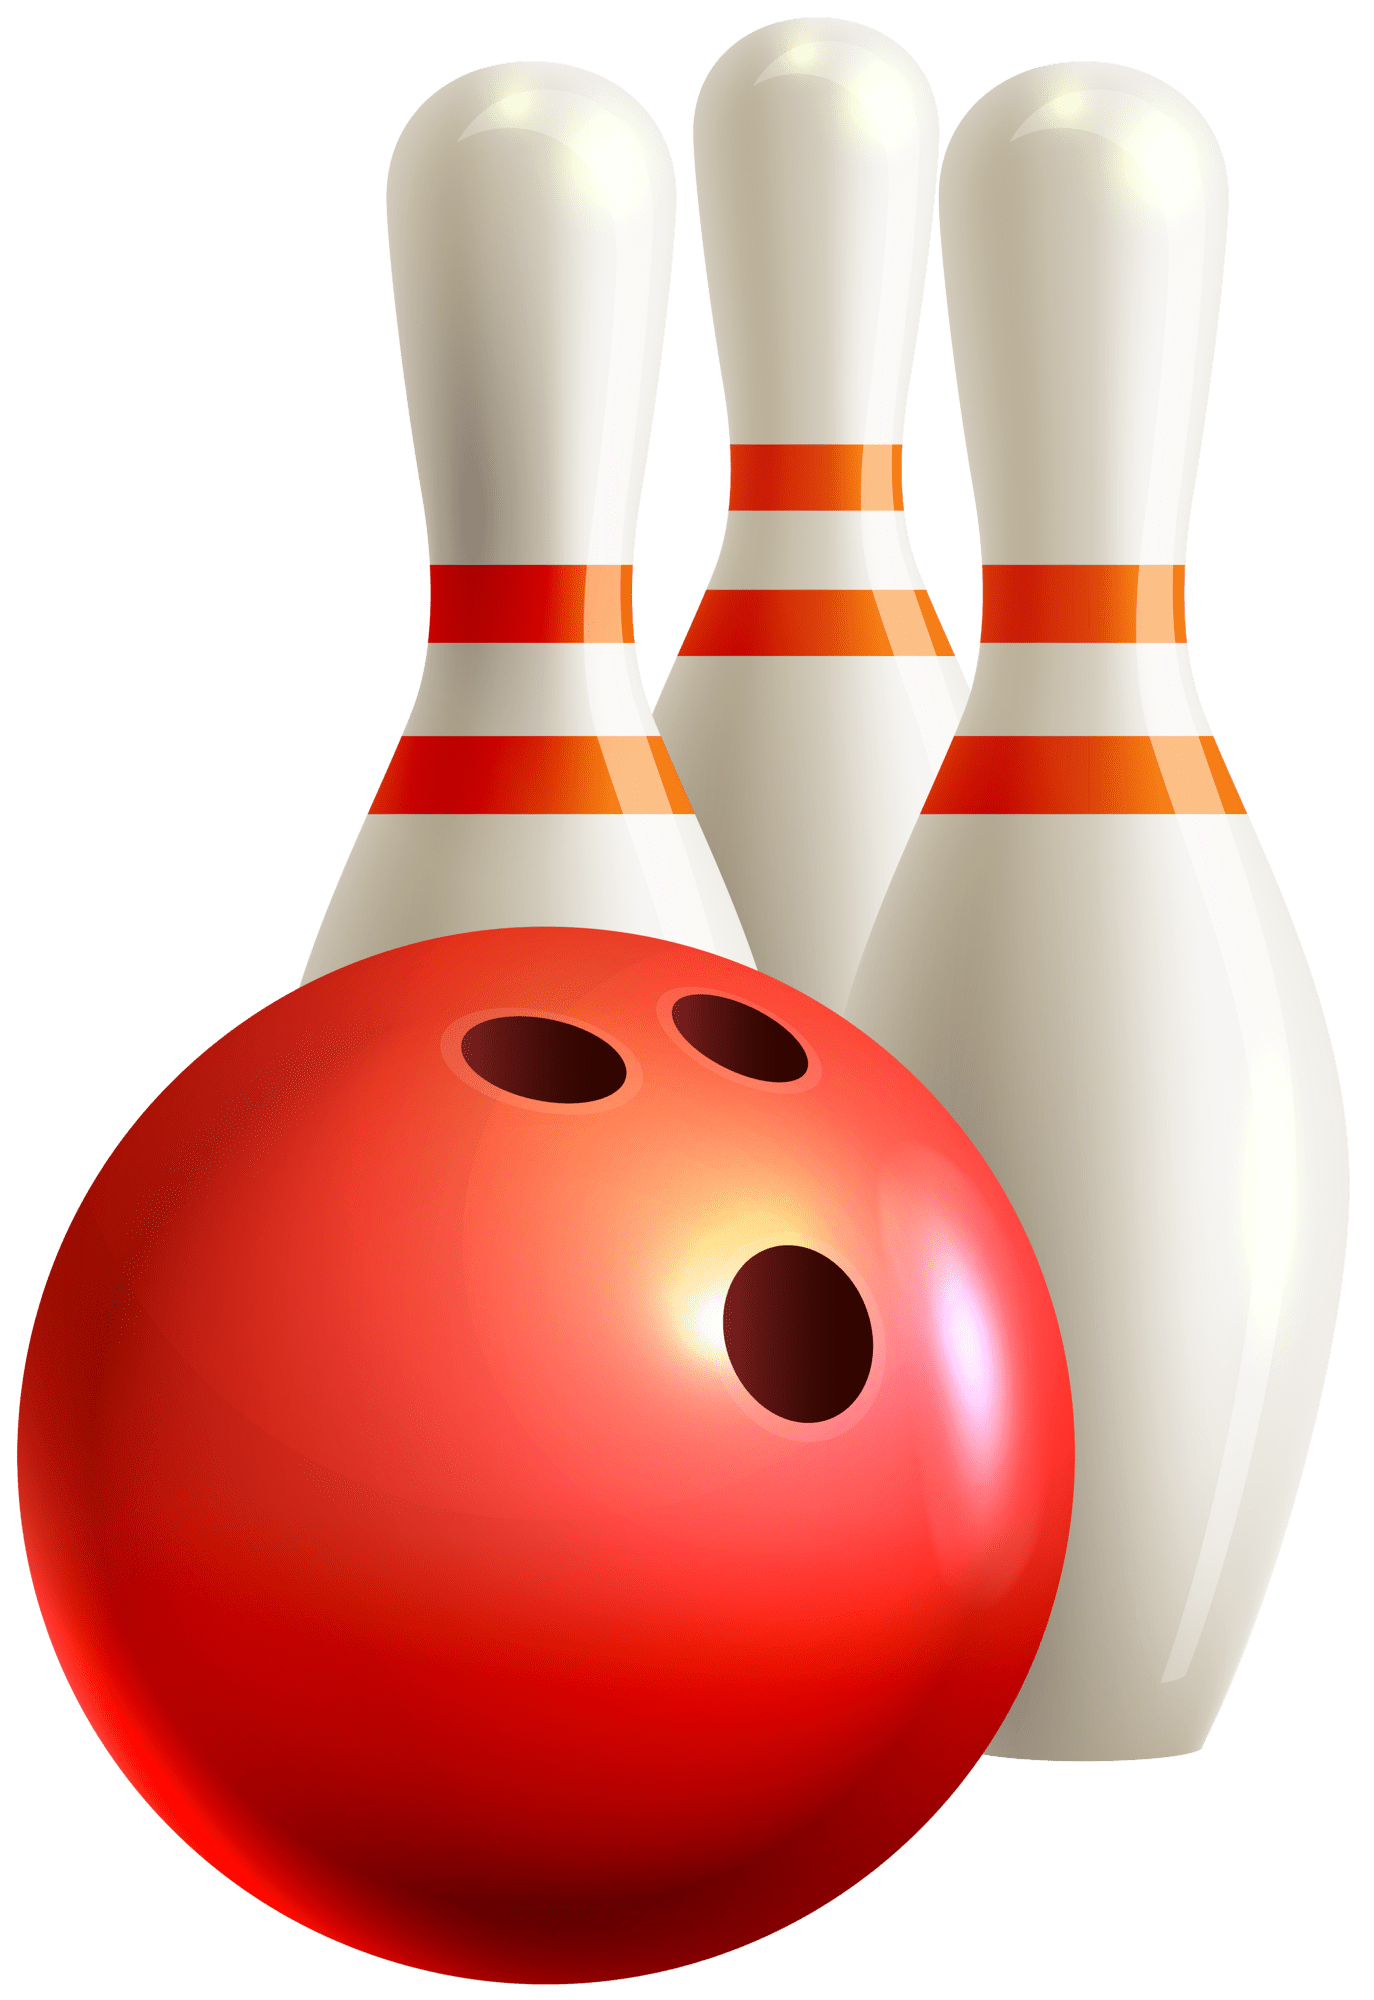 Bowling pin ball and pins clipart image